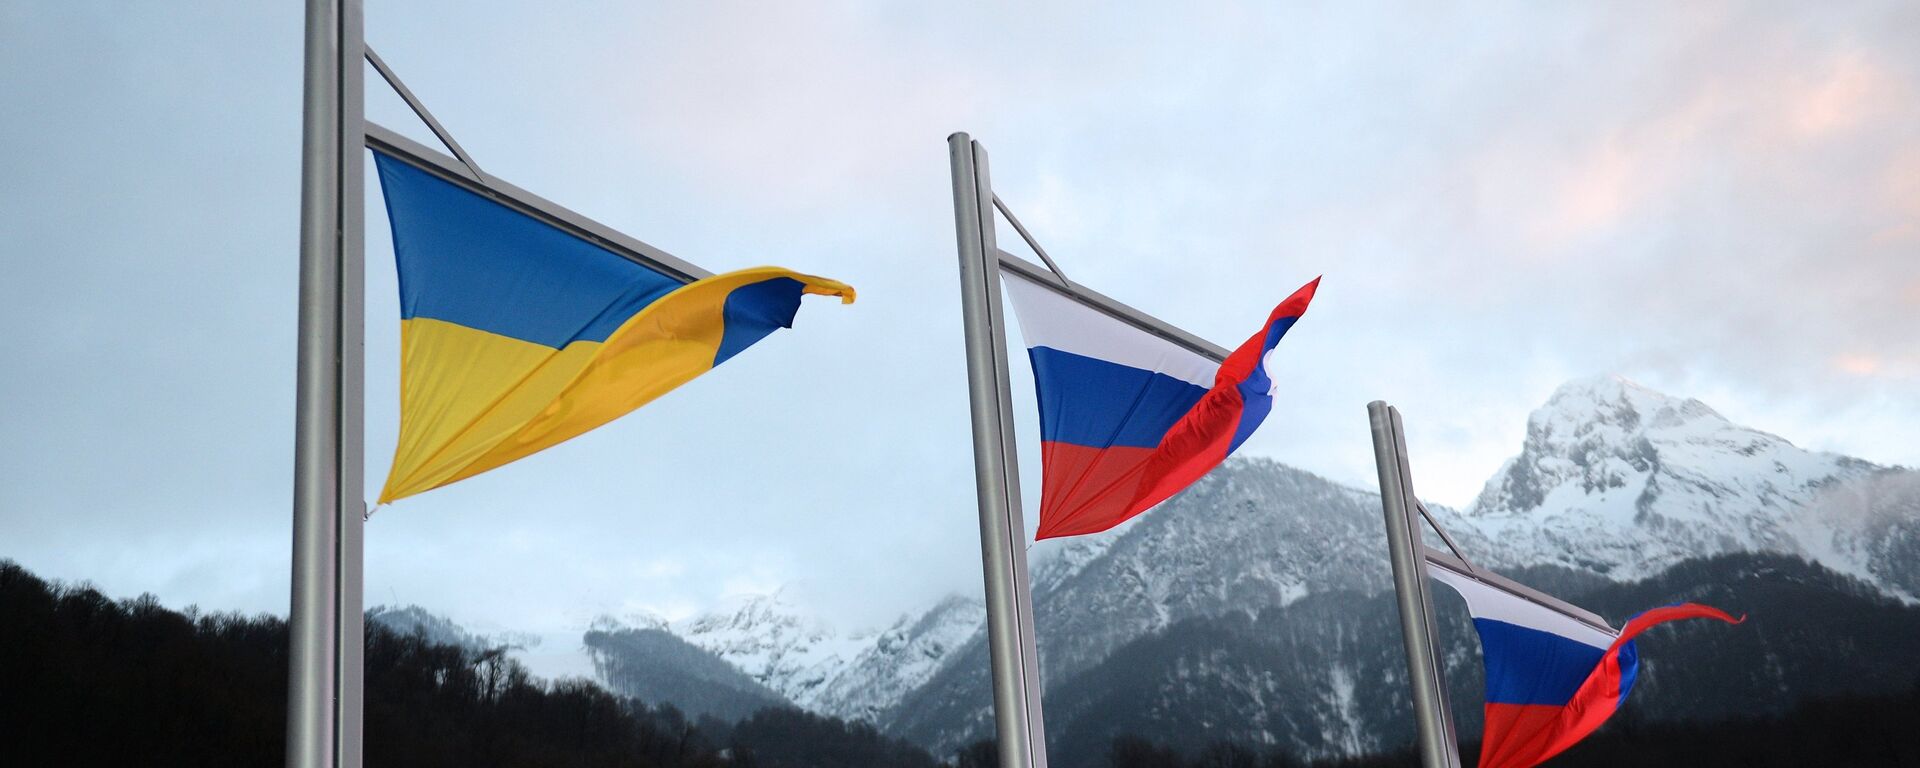 Banderas de Rusia y Ucrania - Sputnik Mundo, 1920, 26.03.2021